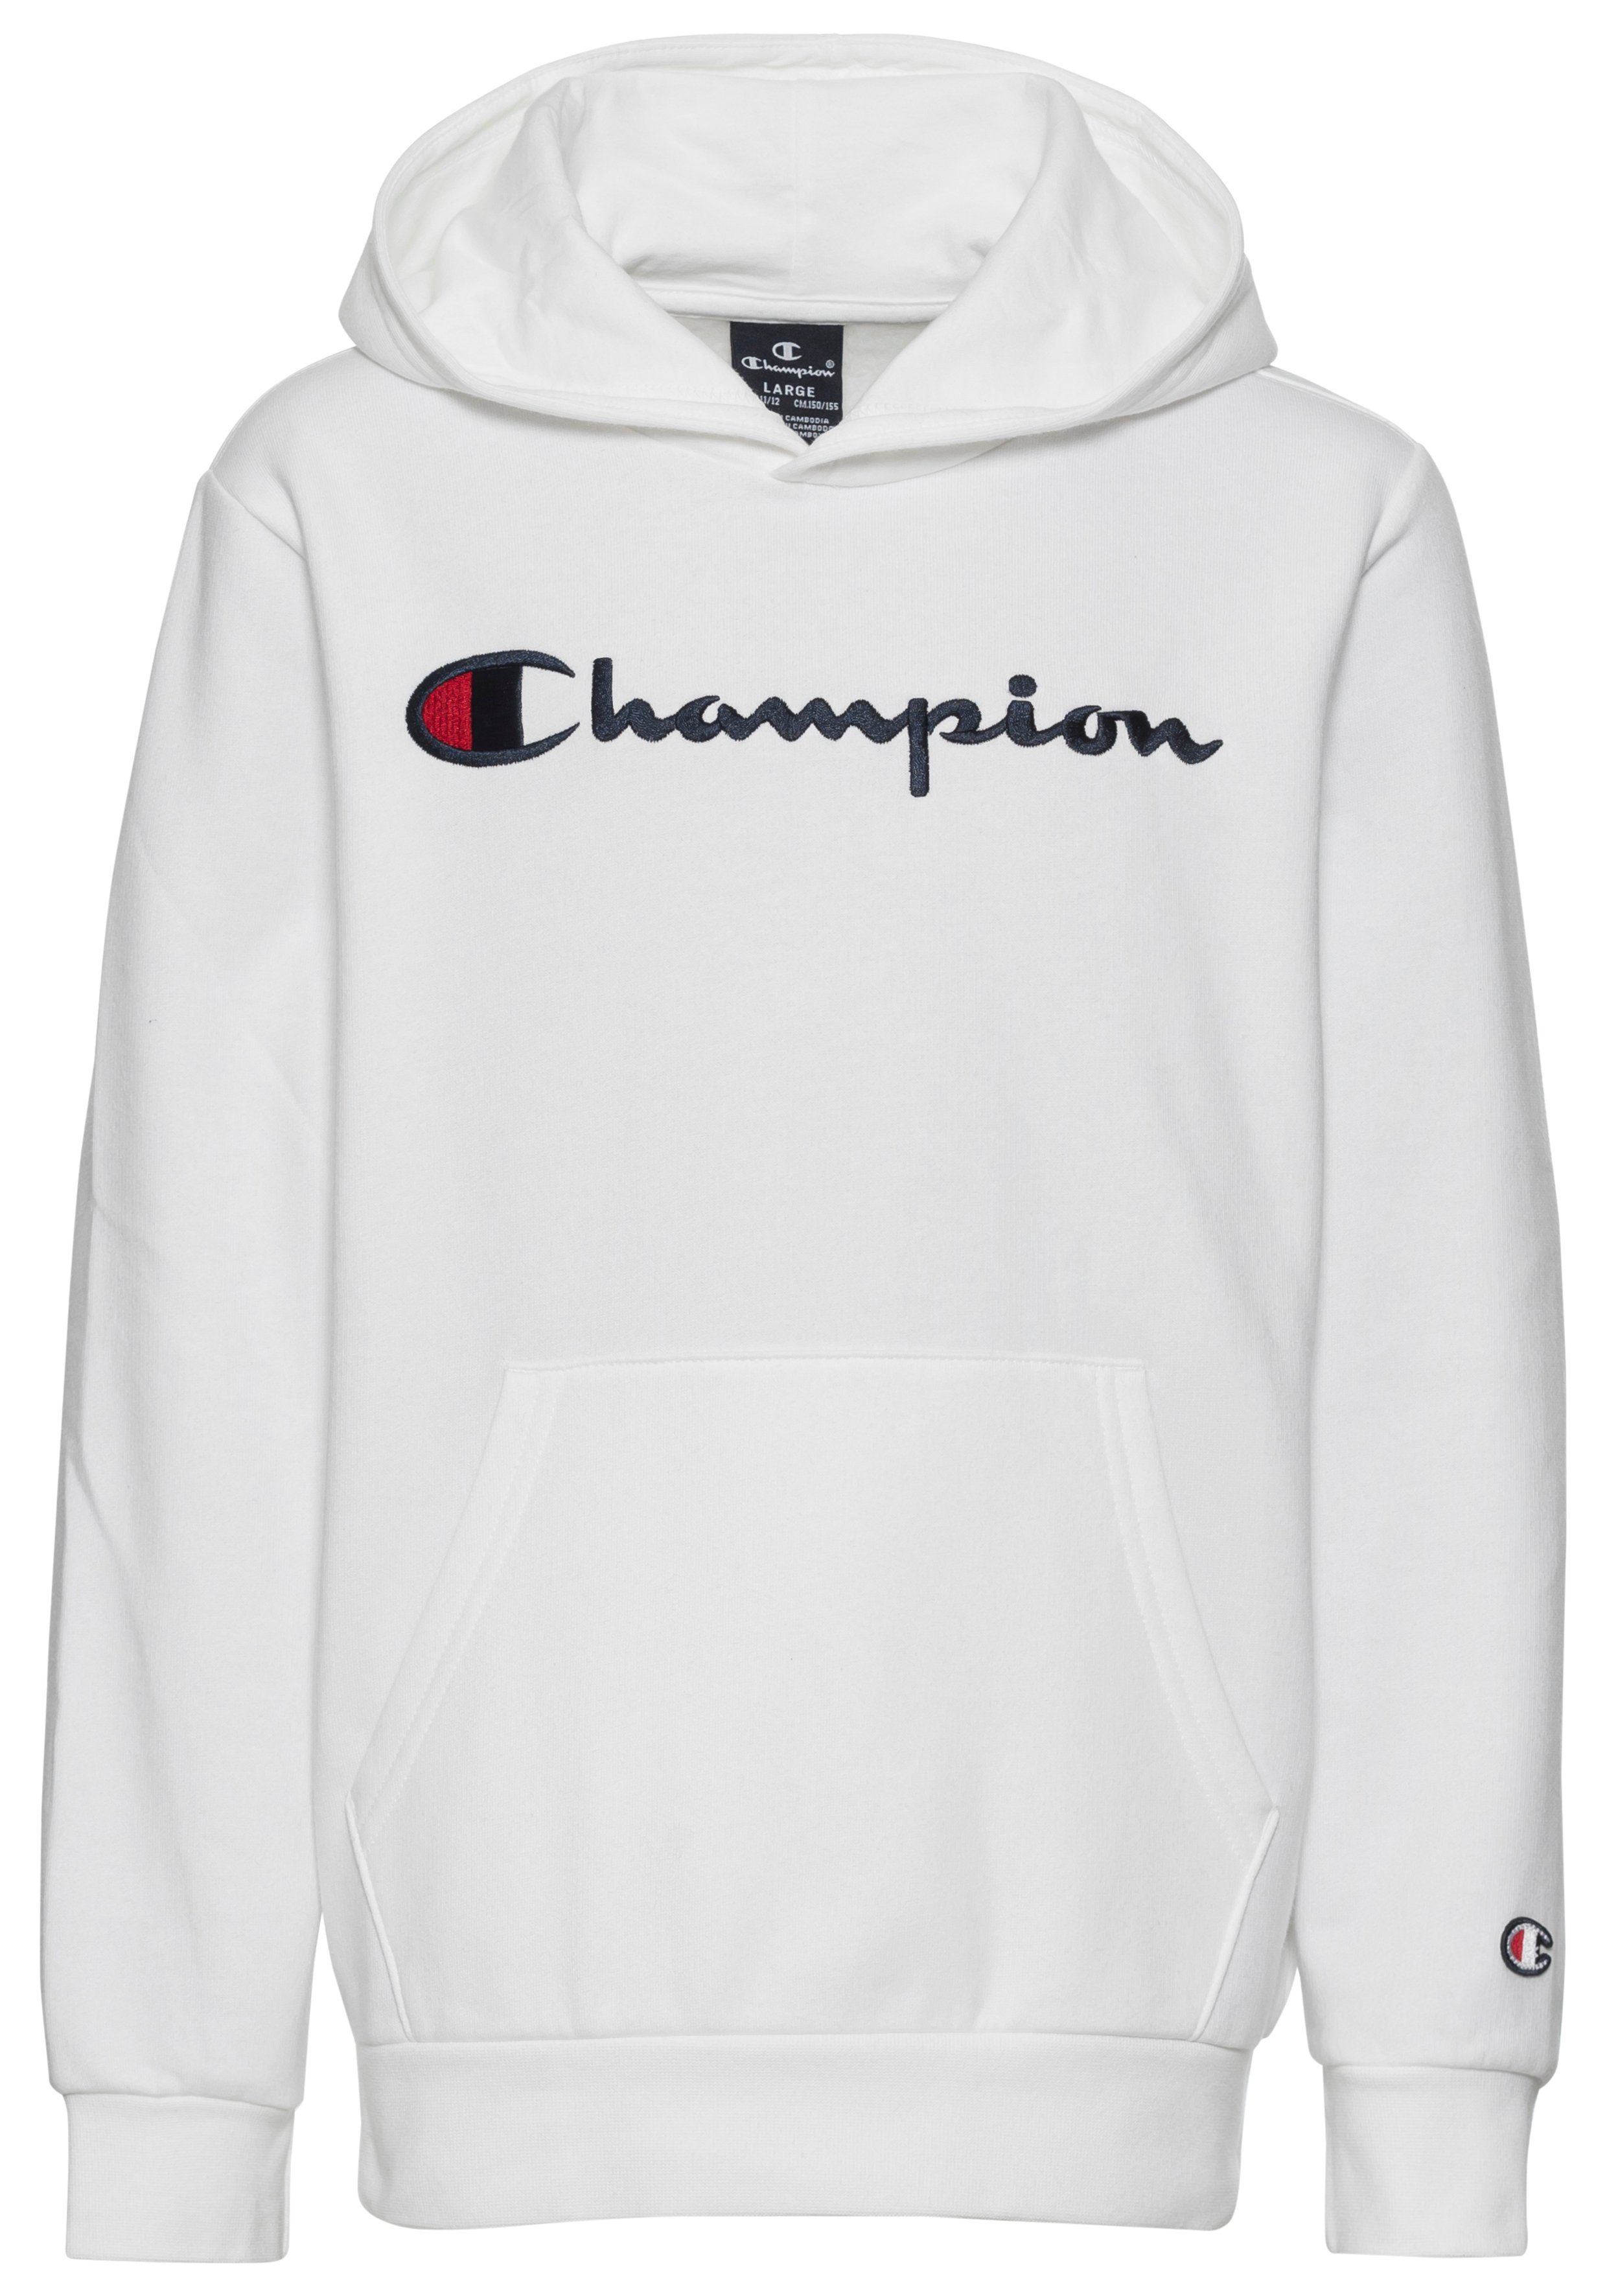 Sweatshirt Hooded Kapuzensweatshirt Champion weiß Icons